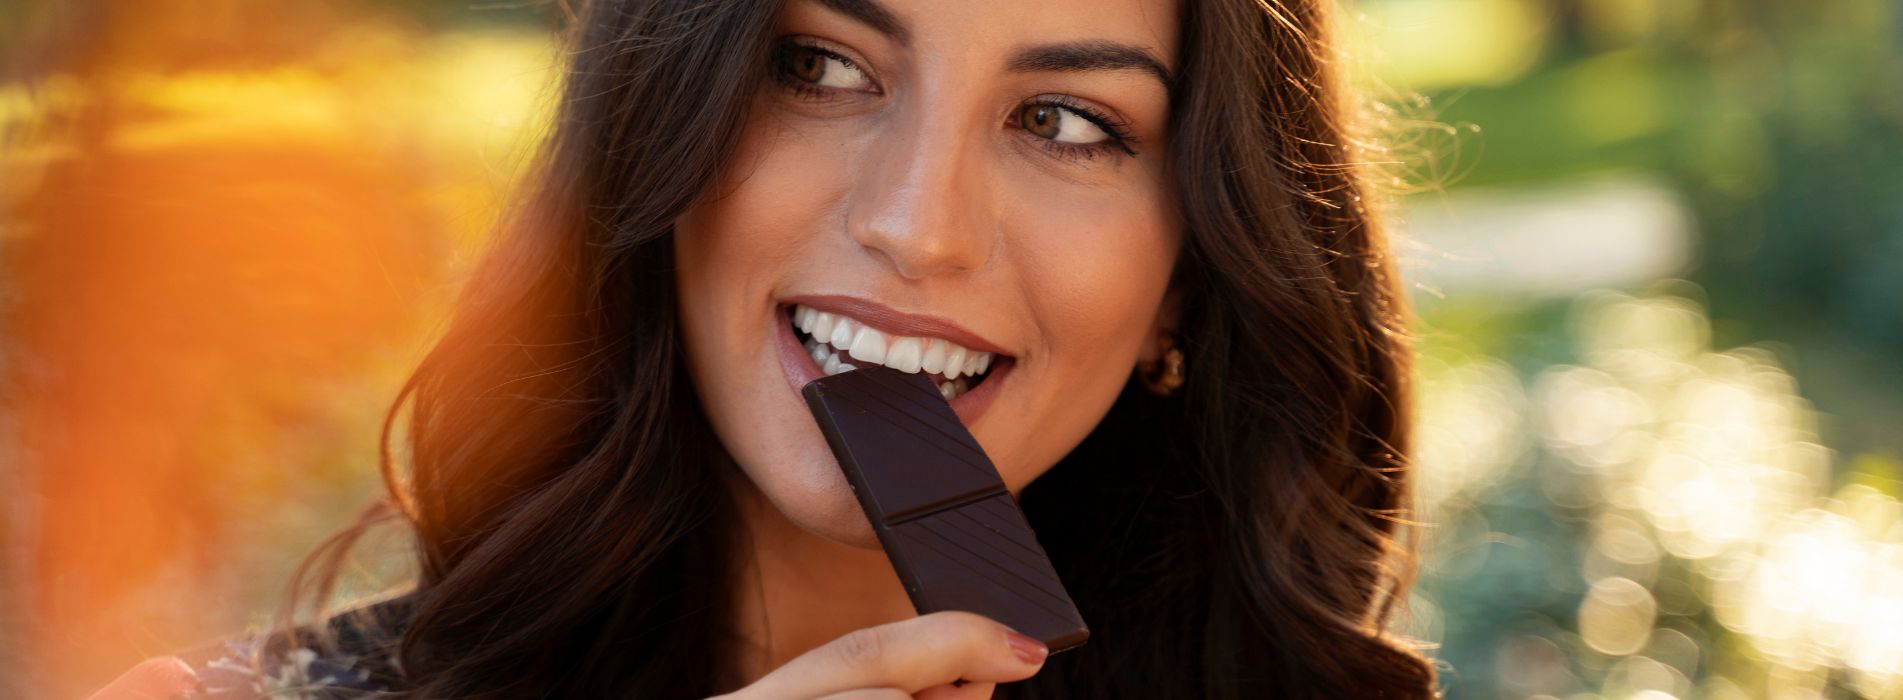 benefits of dark chocolate